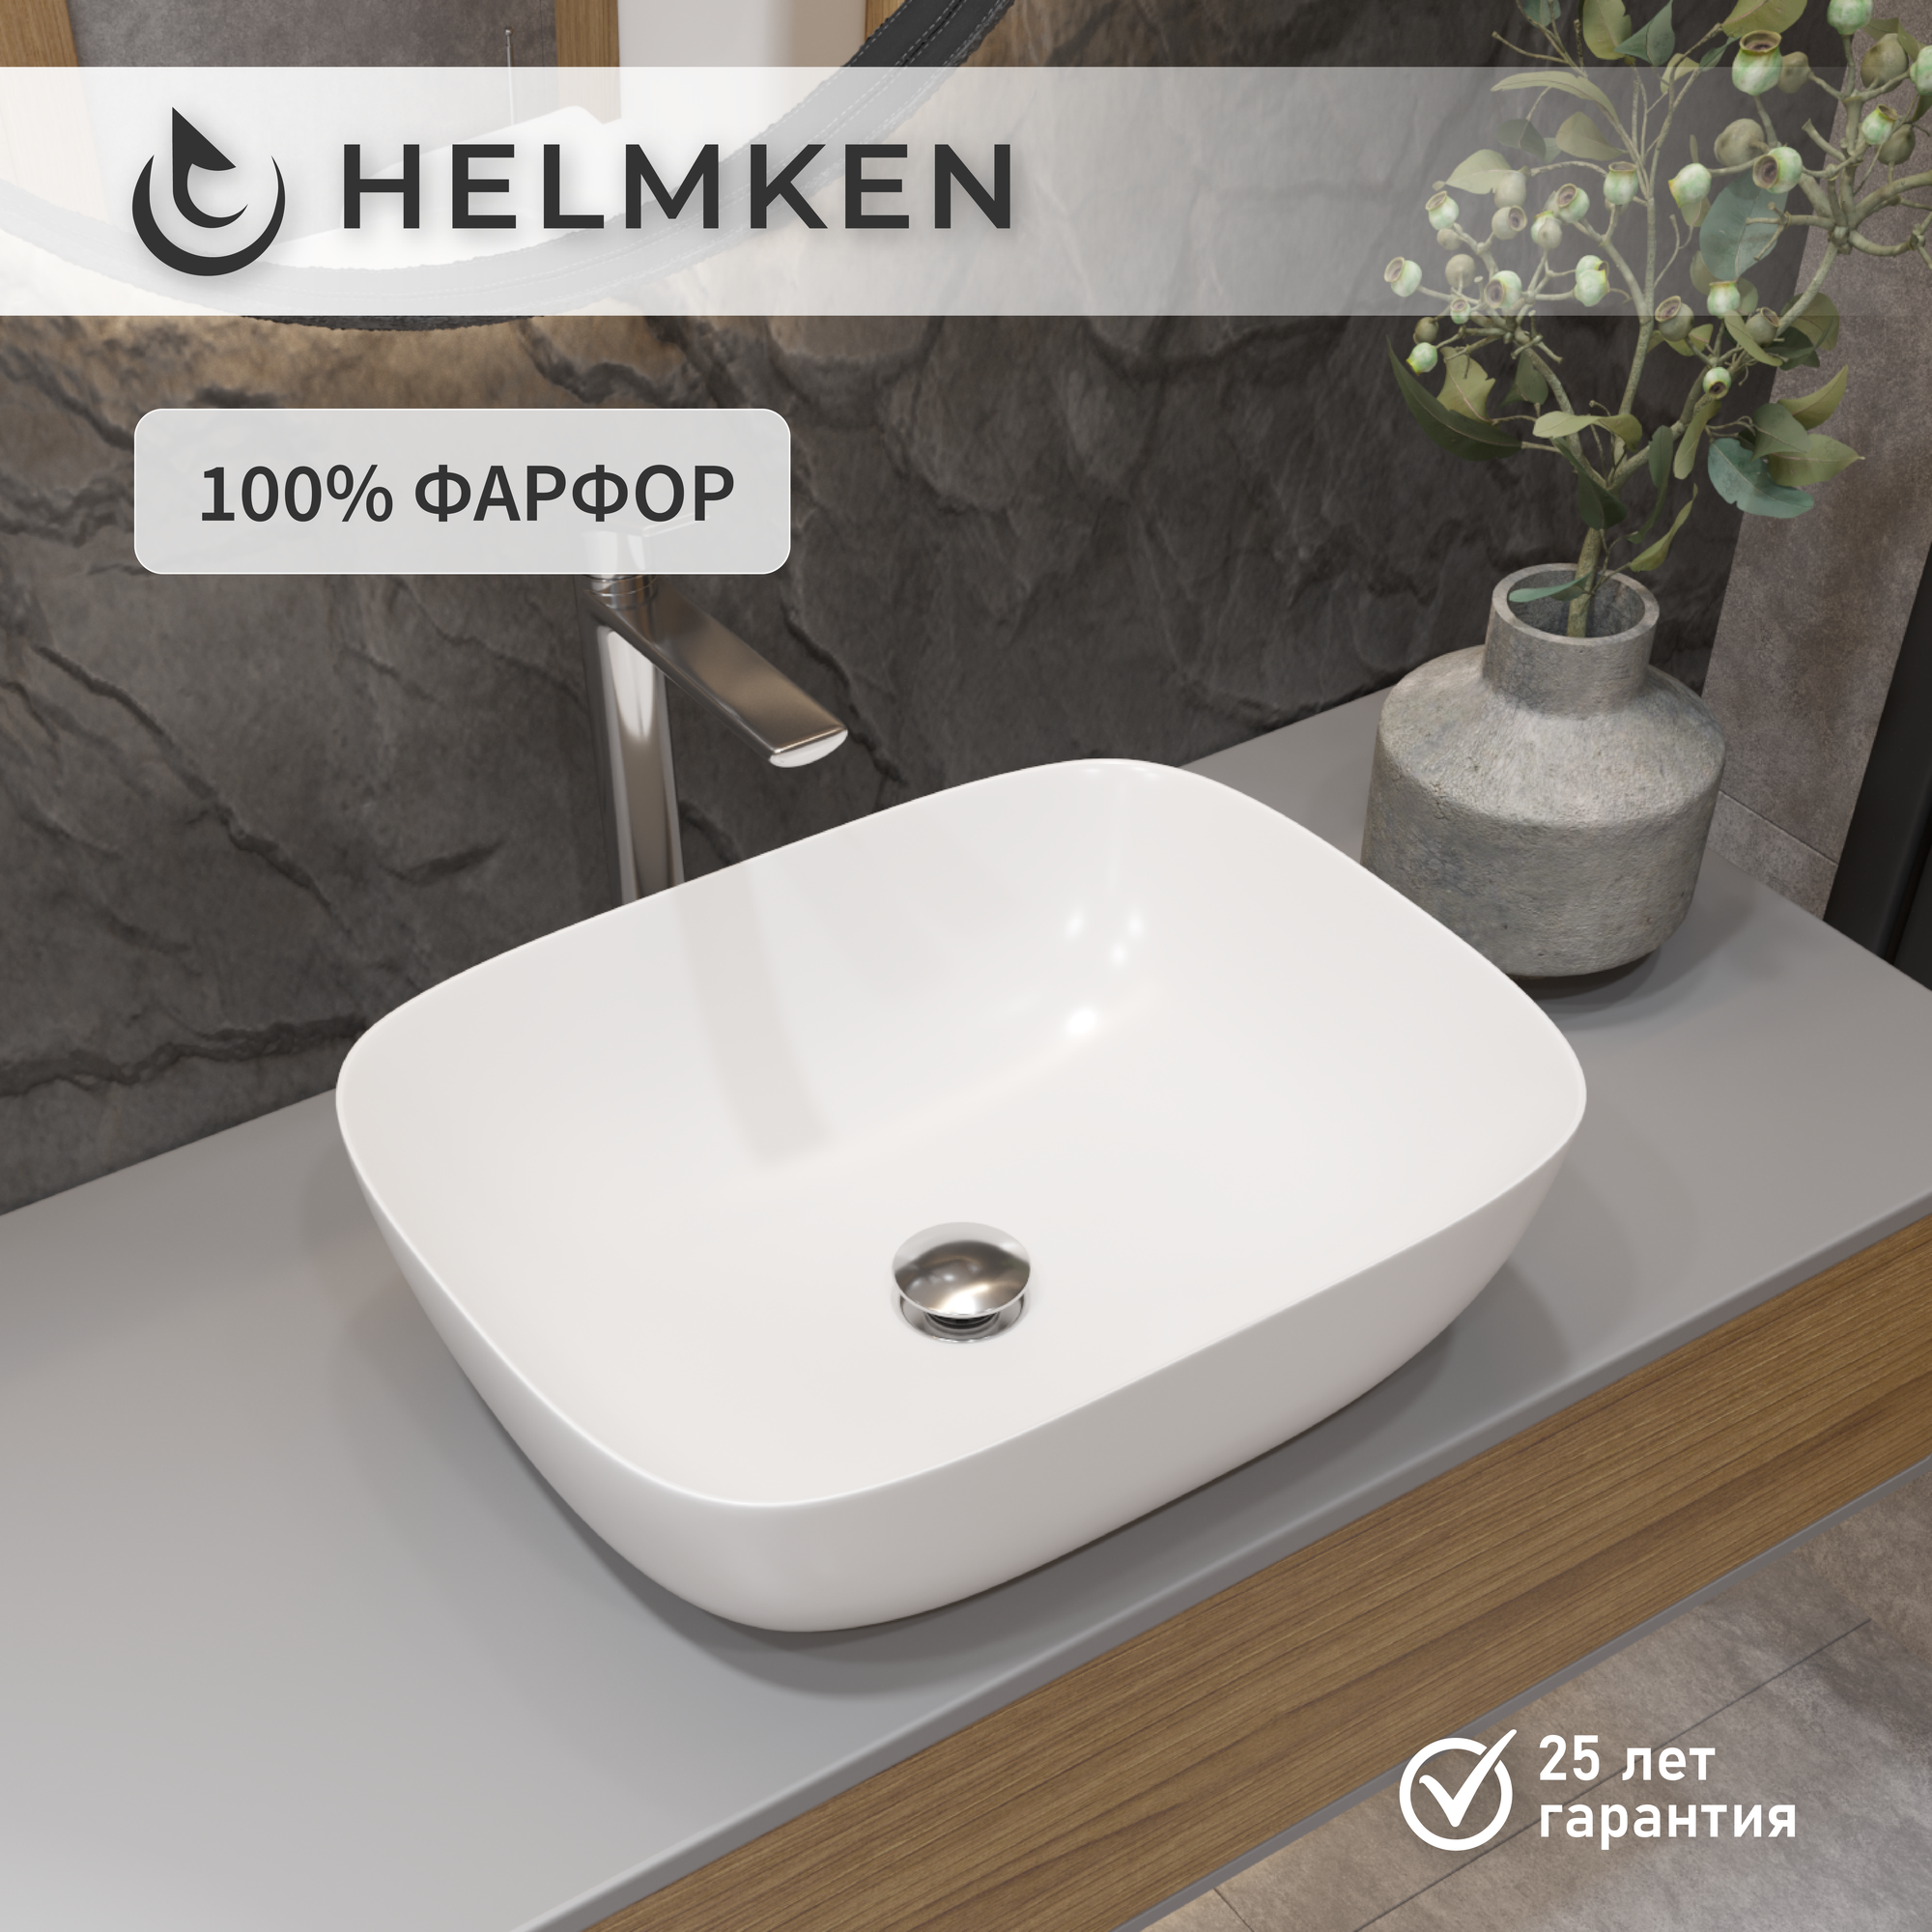 Накладная раковина в ванную Helmken 49349000: умывальник прямоугольный из фарфора 49,5 см, белый цвет, гарантия 25 лет